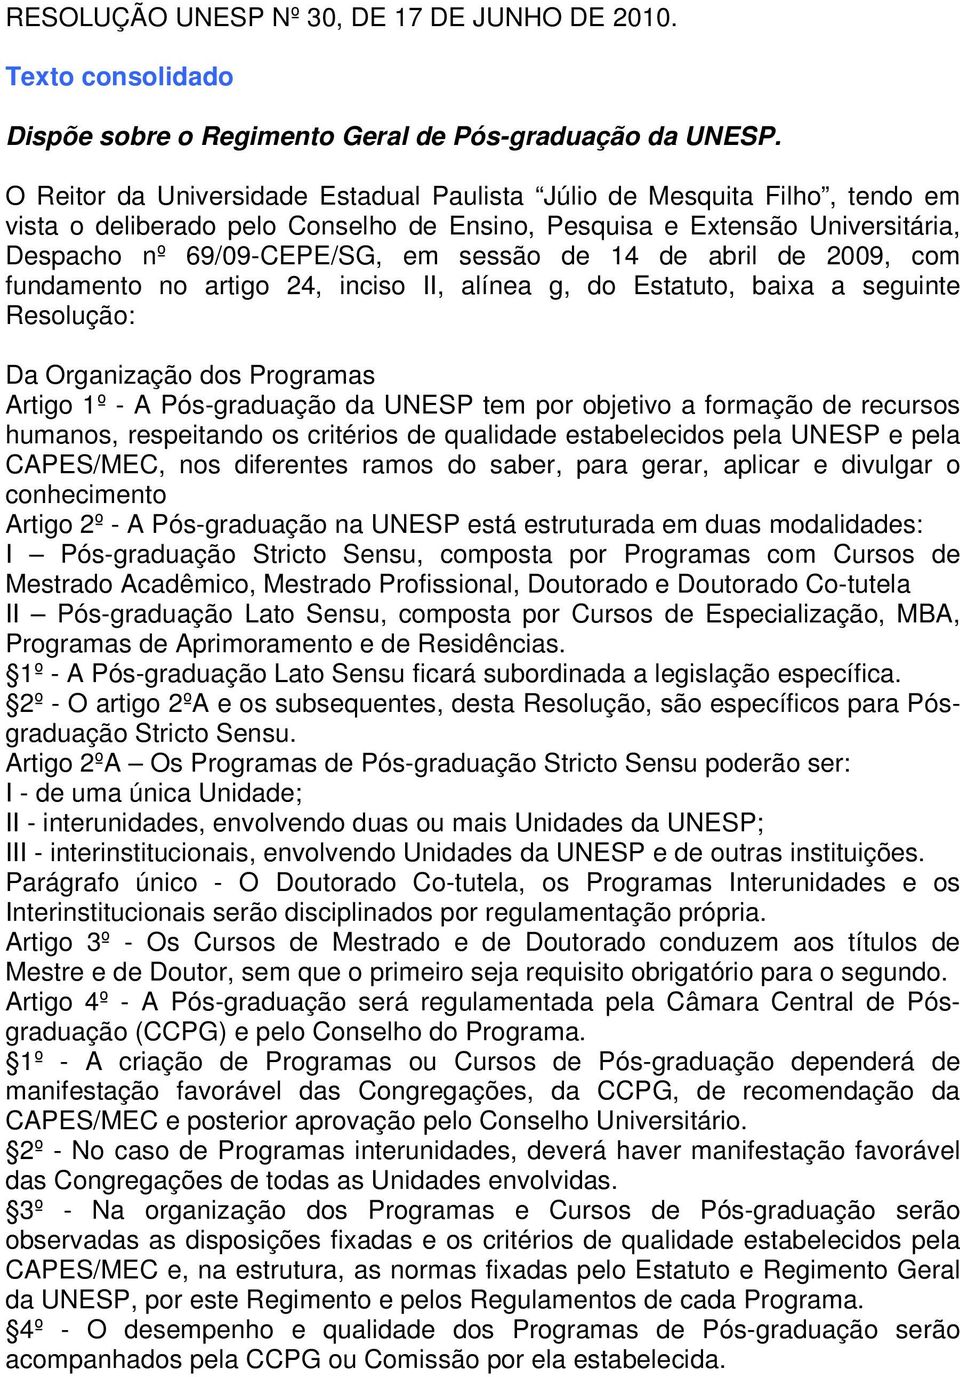 de abril de 2009, com fundamento no artigo 24, inciso II, alínea g, do Estatuto, baixa a seguinte Resolução: Da Organização dos Programas Artigo 1º - A Pós-graduação da UNESP tem por objetivo a